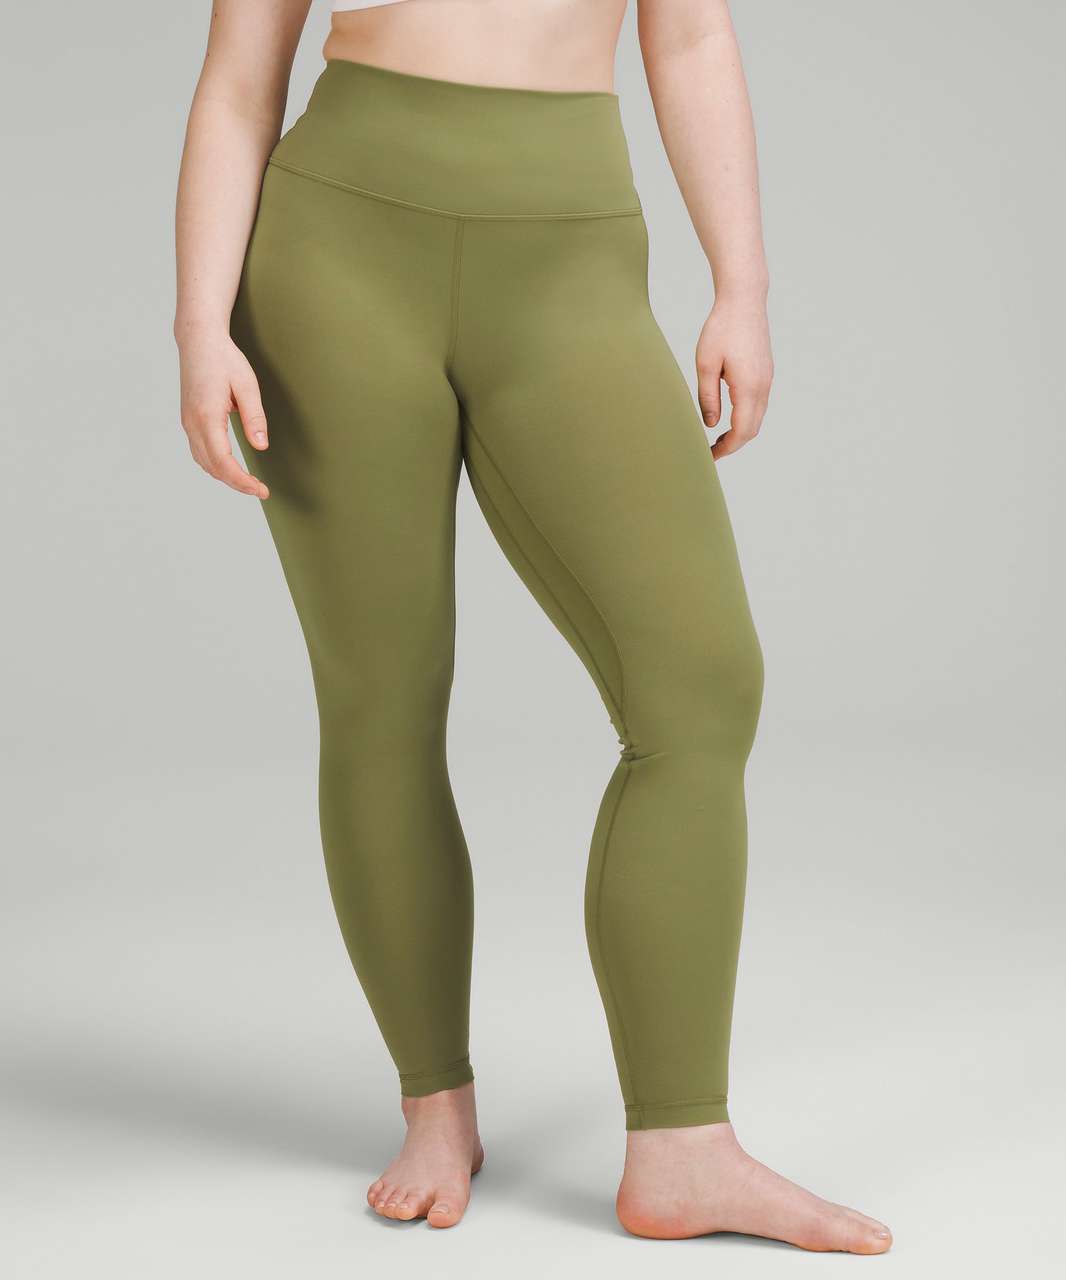 Lululemon Align High-Rise Pant 28" - Bronze Green